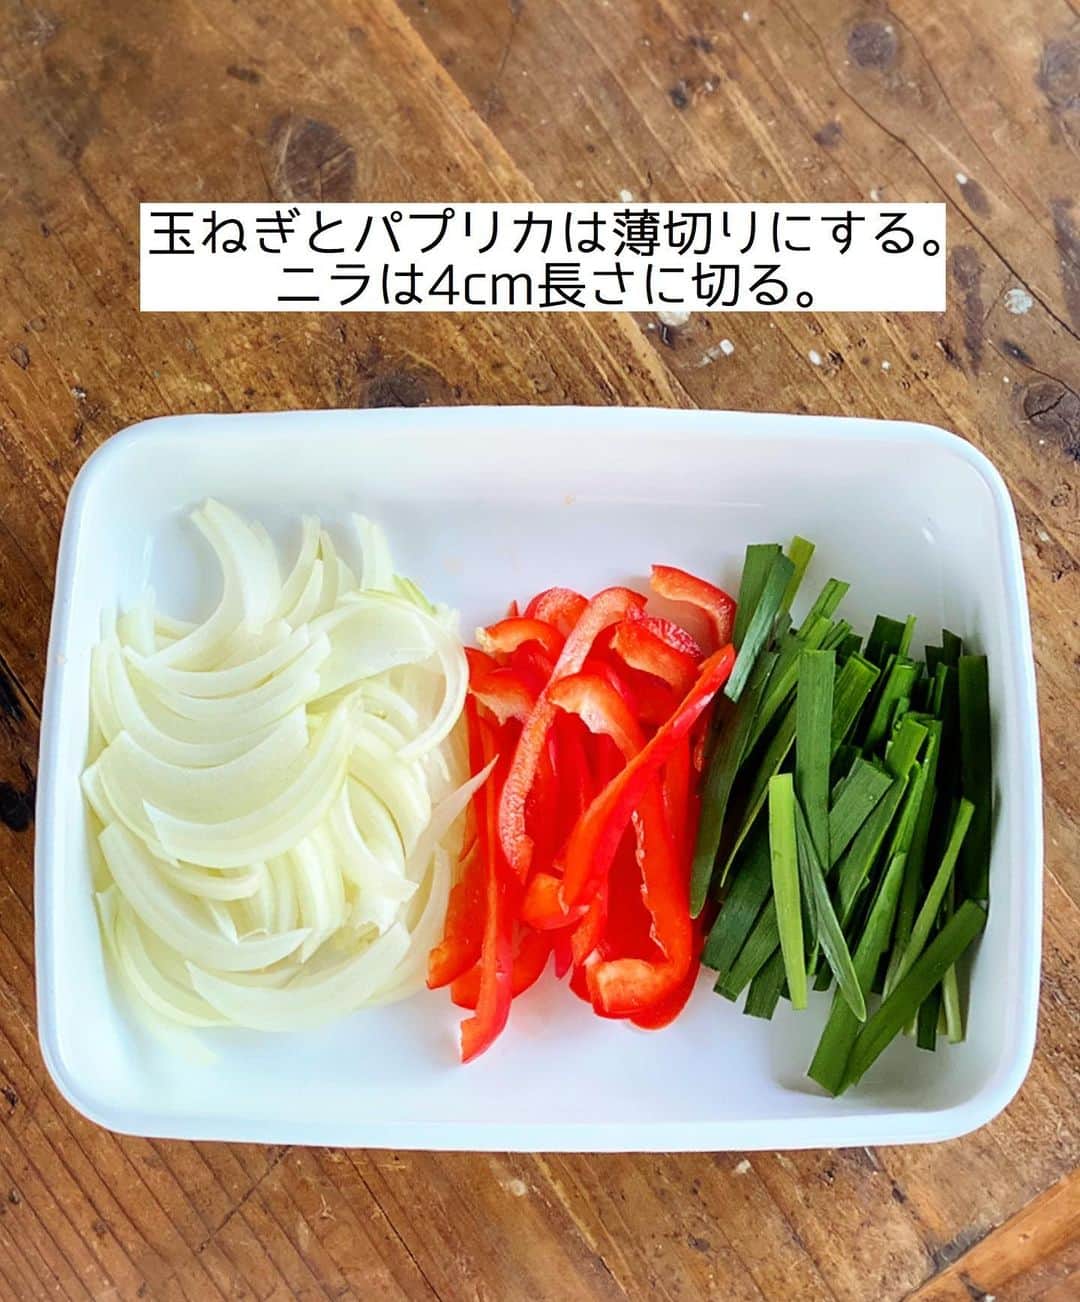 Mizuki【料理ブロガー・簡単レシピ】さんのインスタグラム写真 - (Mizuki【料理ブロガー・簡単レシピ】Instagram)「・﻿ 【#レシピ 】ーーーーーー﻿ ♡スタミナプルコギ♡﻿ (2品献立提案あり)﻿ ーーーーーーーーーーーー﻿ ﻿ ﻿ ﻿ おはようございます(*^^*)﻿ ﻿ 今日ご紹介させていただくのは﻿ ごはんがすすむスタミナプルコギ♡﻿ 一皿でお肉も野菜も食べられて﻿ 子供も大人も楽しめますよ〜♩﻿ ﻿ 作り方は超簡単(*´艸`)﻿ 味付けは下味のみで﻿ ささっと炒めてもう完成！！﻿ あっという間にできるので﻿ よかったらお試し下さいね(*^^*)﻿ ﻿ ﻿ ﻿ ＿＿＿＿＿＿＿＿＿＿＿＿＿＿＿＿＿＿＿＿﻿ 【2人分】﻿ 牛(又は豚)こま切れ肉...200g﻿ 玉ねぎ...1/2個﻿ 赤パプリカ...1/2個﻿ ニラ...1/2束﻿ ●砂糖・醤油・酒・ごま油...各大1﻿ ●オイスターソース...小2﻿ ●豆板醤・片栗粉...各小1/2﻿ ●にんにくチューブ...3cm﻿ (あれば)ごま...適量﻿ ﻿ 1.玉ねぎとパプリカは縦薄切りにする。ニラは4cm長さに切る。﻿ 2.ポリ袋に牛肉、玉ねぎ、パプリカ、●を入れてしっかり揉み込む。﻿ 3.フライパンを中火で熱し、2を入れて炒める。火が通ったらニラを加えてさっと炒め、仕上げにごまを振る。﻿ ￣￣￣￣￣￣￣￣￣￣￣￣￣￣￣￣￣￣￣￣﻿ ﻿ ﻿ ﻿ 《ポイント》﻿ ♦︎豚こま、豚バラで作っても美味しいです♩﻿ ♦︎パプリカの代わりにピーマン(2個)を使用しても♩﻿ ♦︎お子さんが食べる場合は豆板醤は抜いてもOK！﻿ ﻿ ﻿ ﻿ ﻿ ﻿ ﻿ ﻿ ﻿ ＿＿＿＿＿＿＿＿＿＿＿＿＿＿＿＿﻿ 🥣🥣🥣 2品献立提案 🥣🥣🥣﻿ ￣￣￣￣￣￣￣￣￣￣￣￣￣￣￣￣﻿ 【合間に作れるおすすめ副菜】﻿ >うまだれキャベツ(P.88)﻿ >ツナとトマトのつゆポン和え(P.19)﻿ (#Mizukiの2品献立 より)﻿ ﻿ 【献立の段取り】﻿ 副菜を作ってからメインを炒める🥢﻿ ￣￣￣￣￣￣￣￣￣￣￣￣￣￣￣￣﻿ ﻿ ﻿ ﻿ ﻿ ﻿ ﻿ ⭐️発売中⭐️3刷重版が決まりました😭﻿ 本当にありがとうございます(涙)﻿ _____________________________________﻿ \15分でいただきます/﻿ 📕#Mizukiの2品献立 📕﻿ (9月24日発売・マガジンハウス)﻿ ￣￣￣￣￣￣￣￣￣￣￣￣￣￣￣￣￣﻿ ﻿ 忙しい私たちには﻿ 2品くらいがちょうどいい！﻿ 『しんどくない献立、考えました』﻿ ￣￣￣￣￣￣￣￣￣￣￣￣￣￣￣￣﻿ ﻿ ーーーーーPART.1 ーーーーー﻿ 【Mizukiのお墨つき！２品献立ベスト10】﻿ 約15分でできる10献立をご紹介！﻿ メインは全部フライパン﻿ 副菜はレンチンor混ぜるだけ♡﻿ ﻿ ーーーーーPART.2 ーーーーー﻿ 【フライパンひとつ！今夜のメインおかず】﻿ 献立の主役になる肉や魚のおかず50品！﻿ Part3の副菜と組み合わせれば﻿ 献立のバリエーションが広がりますよ♩﻿ ﻿ ーーーーー PART.3 ーーーーー﻿ 【合間に作れる！ 野菜別かんたん副菜】﻿ レンチンor和えるだけの副菜レシピを﻿ 素材別にたっぷり収録♩﻿ ﻿ ーーーーー番外編ーーーーー﻿ 【ひとつで満足！ご飯＆麺】﻿ 【具だくさん！おかずスープ】﻿ 【オーブンいらずのおやつレシピ】﻿ ￣￣￣￣￣￣￣￣￣￣￣￣￣￣￣￣￣￣﻿ (ハイライトにリンク🔗あります💗)﻿ ﻿ ﻿ ﻿ ﻿ ﻿ ＿＿＿＿＿＿＿＿＿＿＿＿＿＿＿＿＿＿﻿ 🔔テレビ出演のお知らせ🔔﻿ 【NHK Eテレ #まる得マガジン 】﻿ 2回目の放送が始まっています✨﻿ 昼(11：55〜 月-木) ﻿ 夜(21：55〜 月-木)﻿ 俳優の武田航平さん﻿ (@kouhei_takeda.official )と一緒に﻿ 絶品おやつから意外なランチまで﻿ たくさん作らせていただきますよ♩﻿ ﻿ ＊NHKテキスト発売中📕﻿ ￣￣￣￣￣￣￣￣￣￣￣￣￣￣￣￣￣￣﻿ ﻿ ﻿ ﻿ ﻿ ﻿ ＿＿＿＿＿＿＿＿＿＿＿＿＿＿＿＿＿＿﻿ レシピを作って下さった際や﻿ レシピ本についてのご投稿には﻿ タグ付け( @mizuki_31cafe )して﻿ お知らせいただけると嬉しいです😊💕﻿ ￣￣￣￣￣￣￣￣￣￣￣￣￣￣￣￣￣￣﻿ ﻿ ﻿ ﻿ ﻿ #スタジオ#牛肉#豚肉#ピーマン#Mizuki#簡単レシピ#時短レシピ#節約レシピ#料理#フーディーテーブル#マカロニメイト#おうちごはん#デリスタグラマー#料理好きな人と繋がりたい#食べ物#料理記録#おうちごはんlover#写真好きな人と繋がりたい#foodpic#cooking#recipe#lin_stagrammer#foodporn#yummy#f52grams#スタミナプルコギm」11月26日 7時06分 - mizuki_31cafe